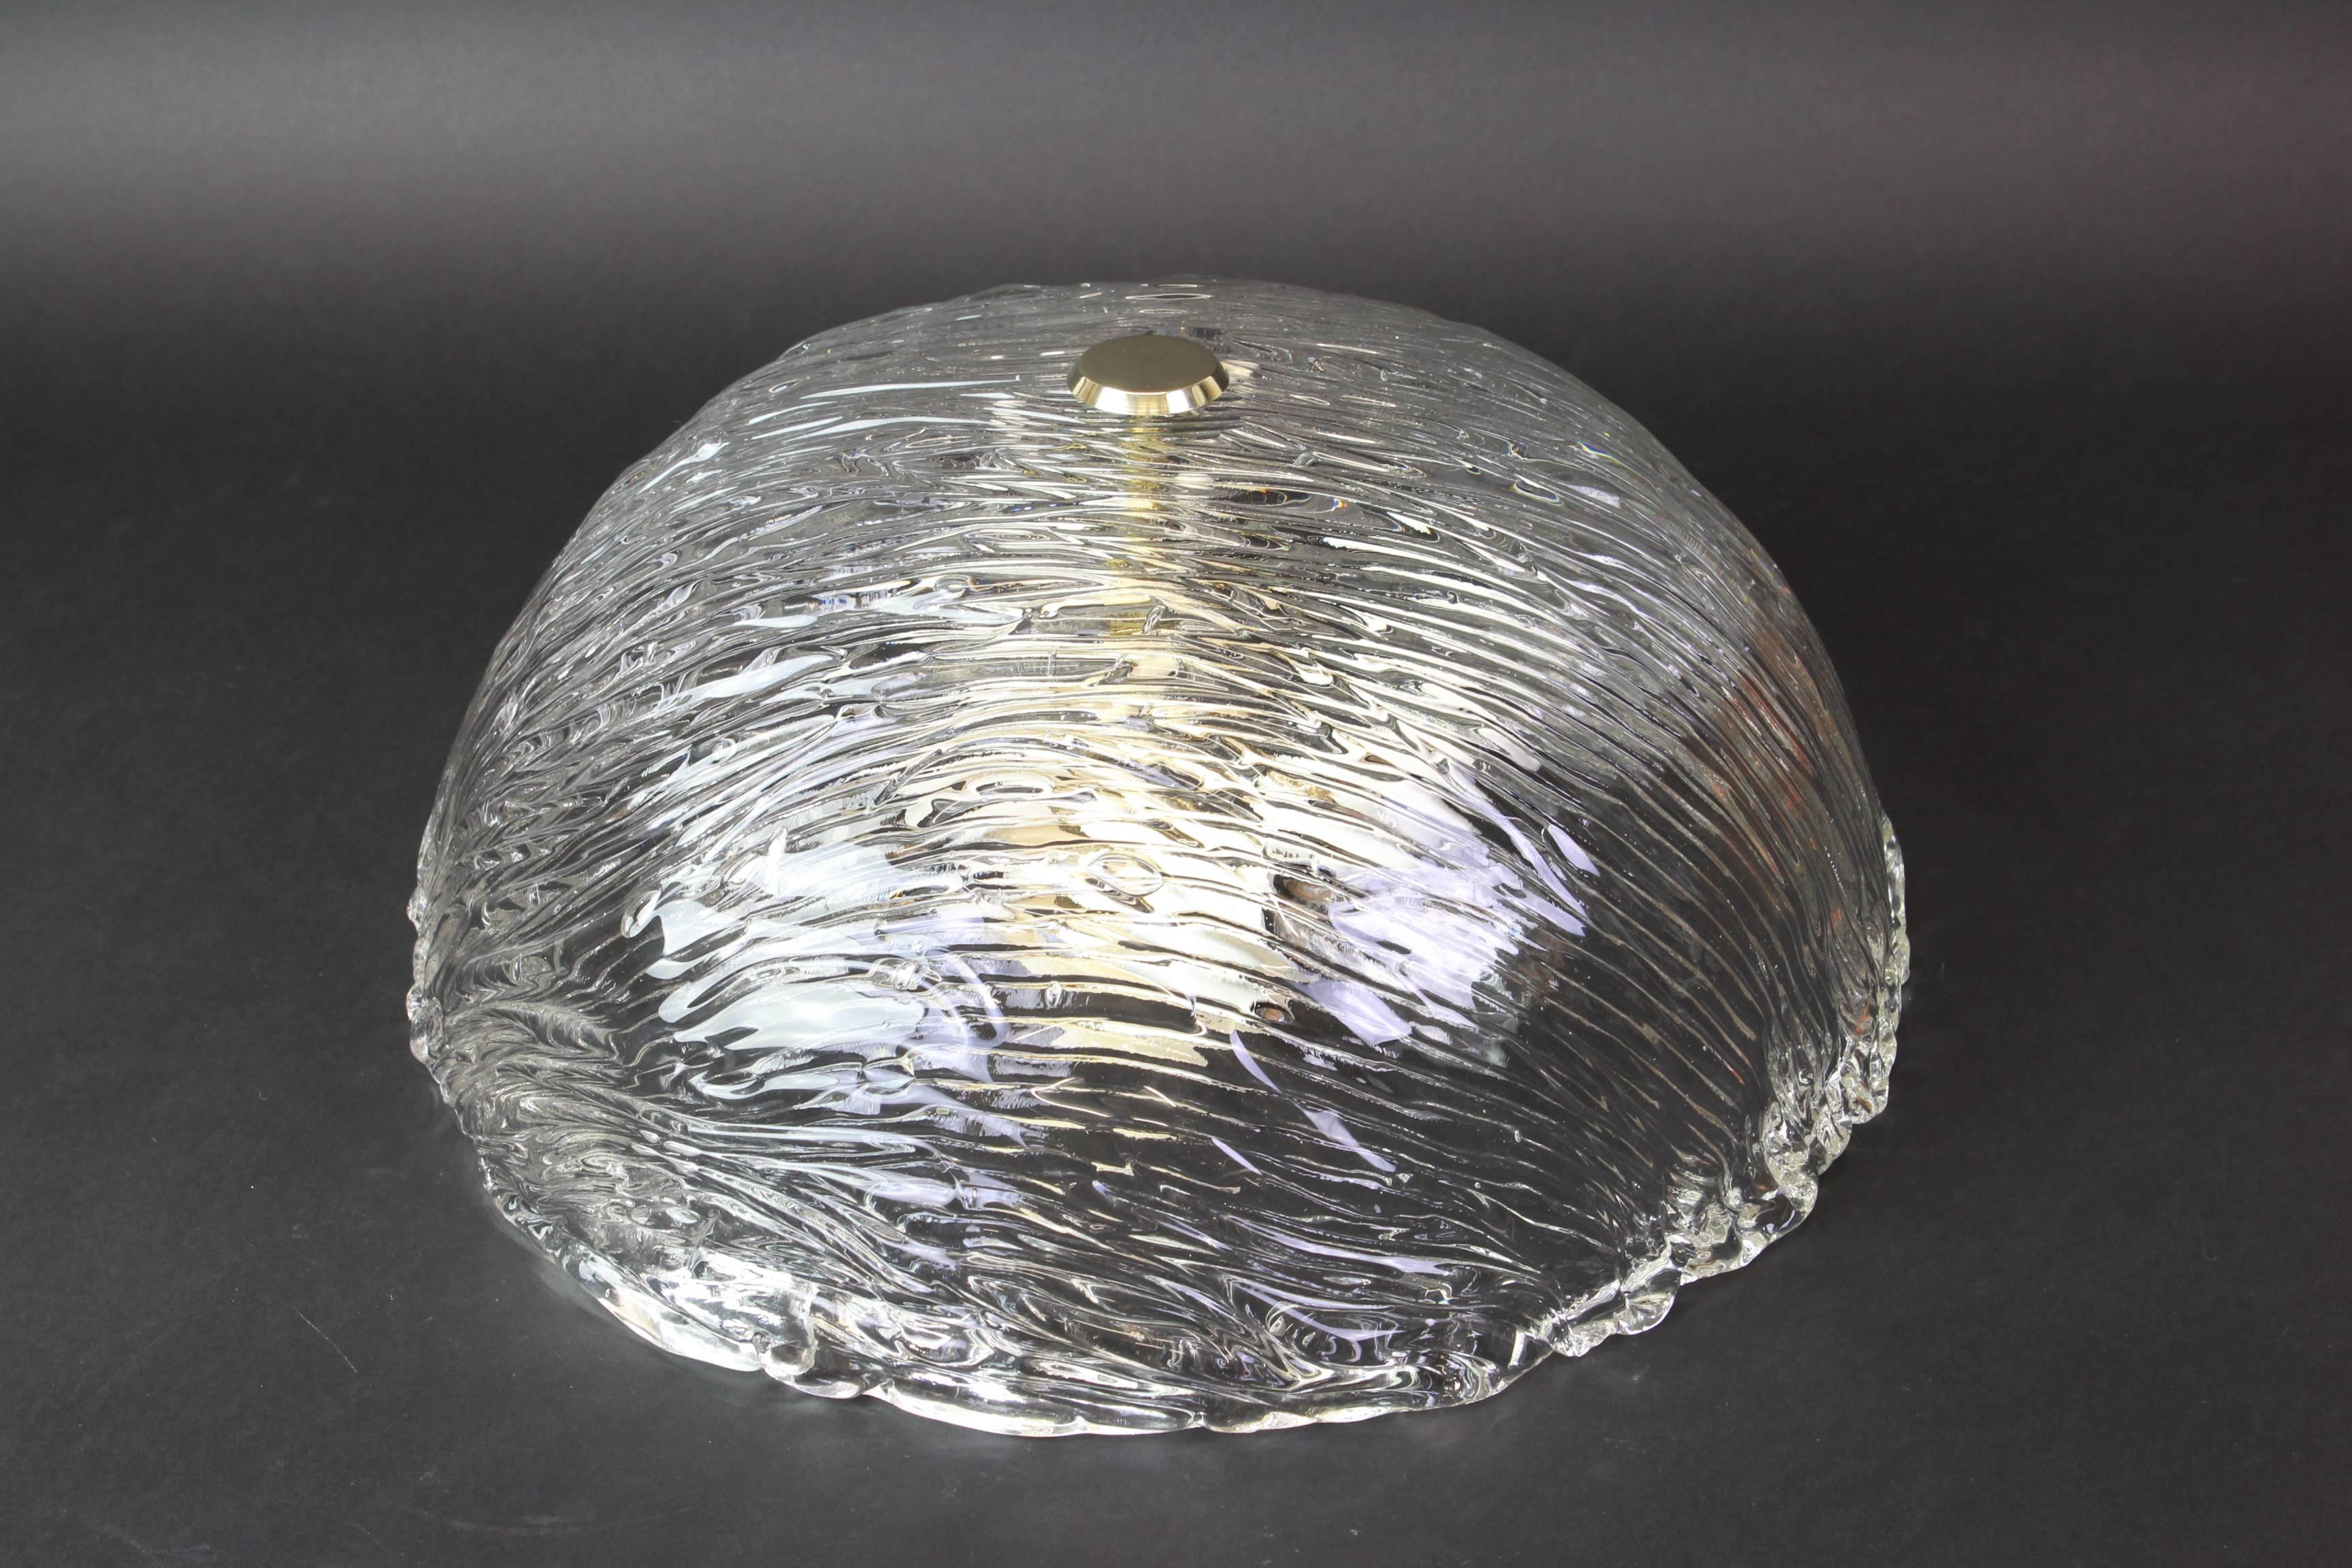 Plafonniers Venini attribués à Carlo Scarpa pour Venini, années 1950.
Merveilleux effet de lumière.
Le dôme en verre fortement texturé et légèrement irisé est maintenu en place par un bouton en laiton

De haute qualité et en très bon état.